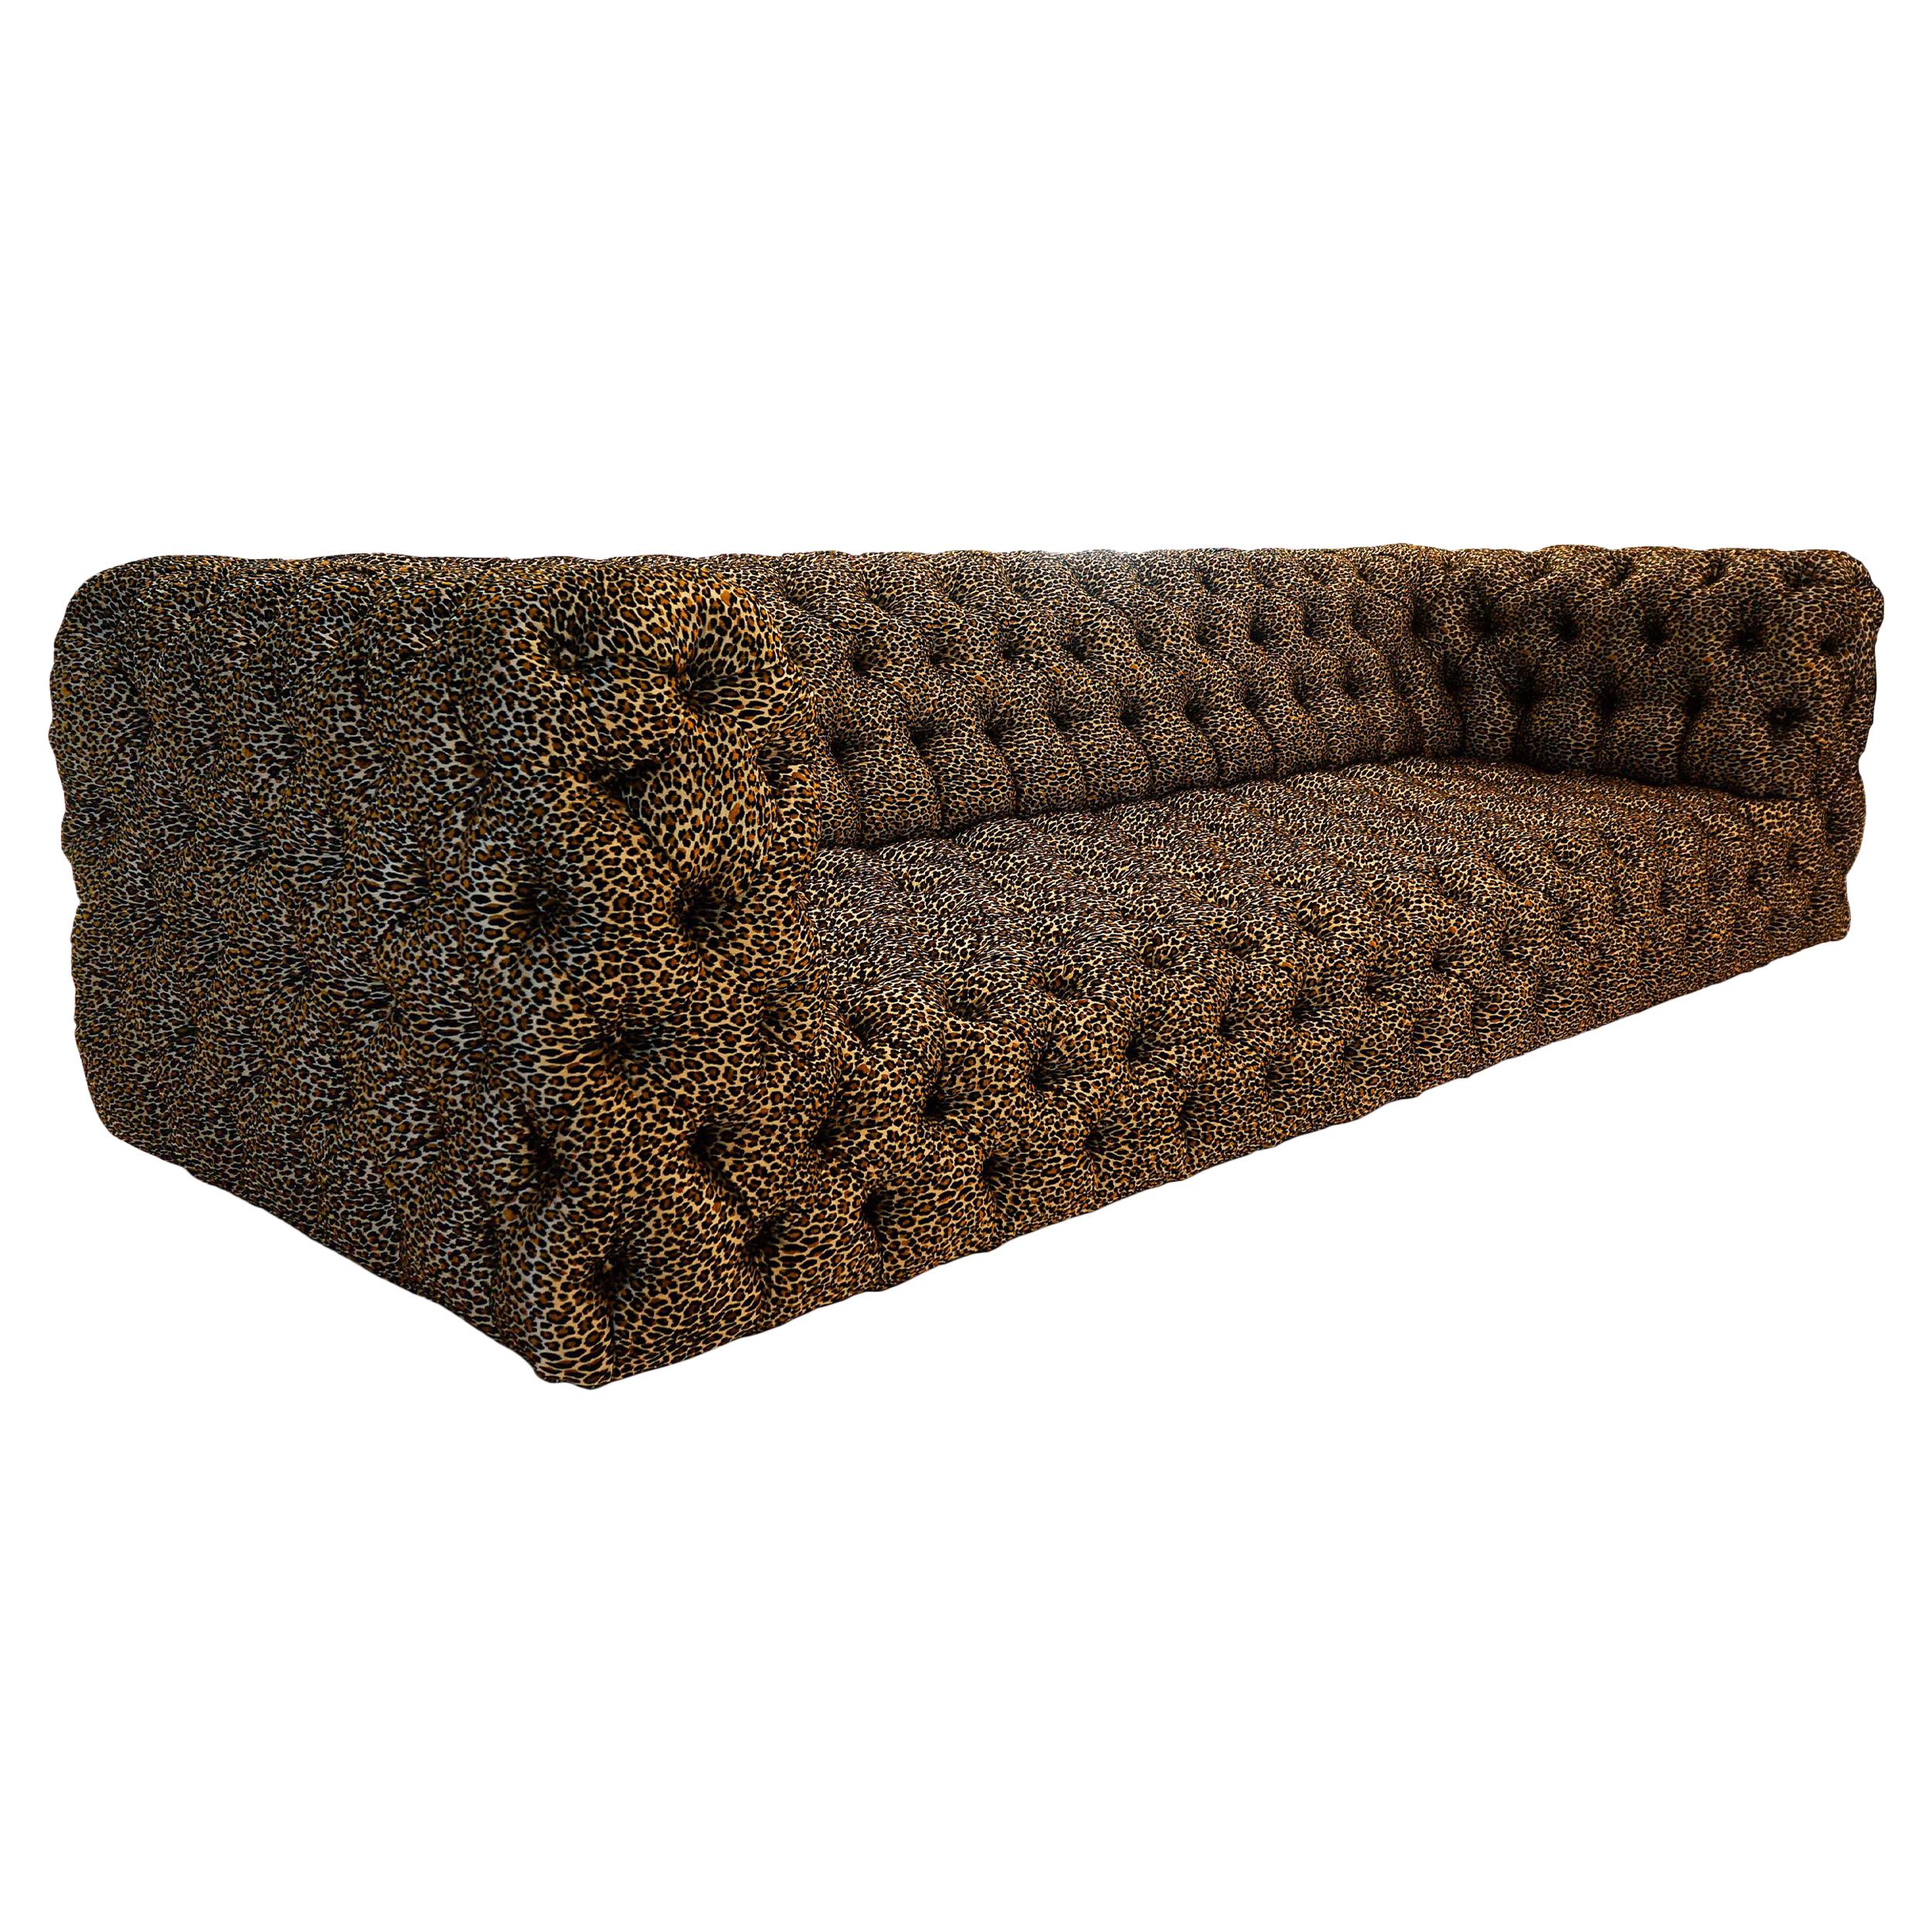 Sofa mit getuftetem Leopardenmuster